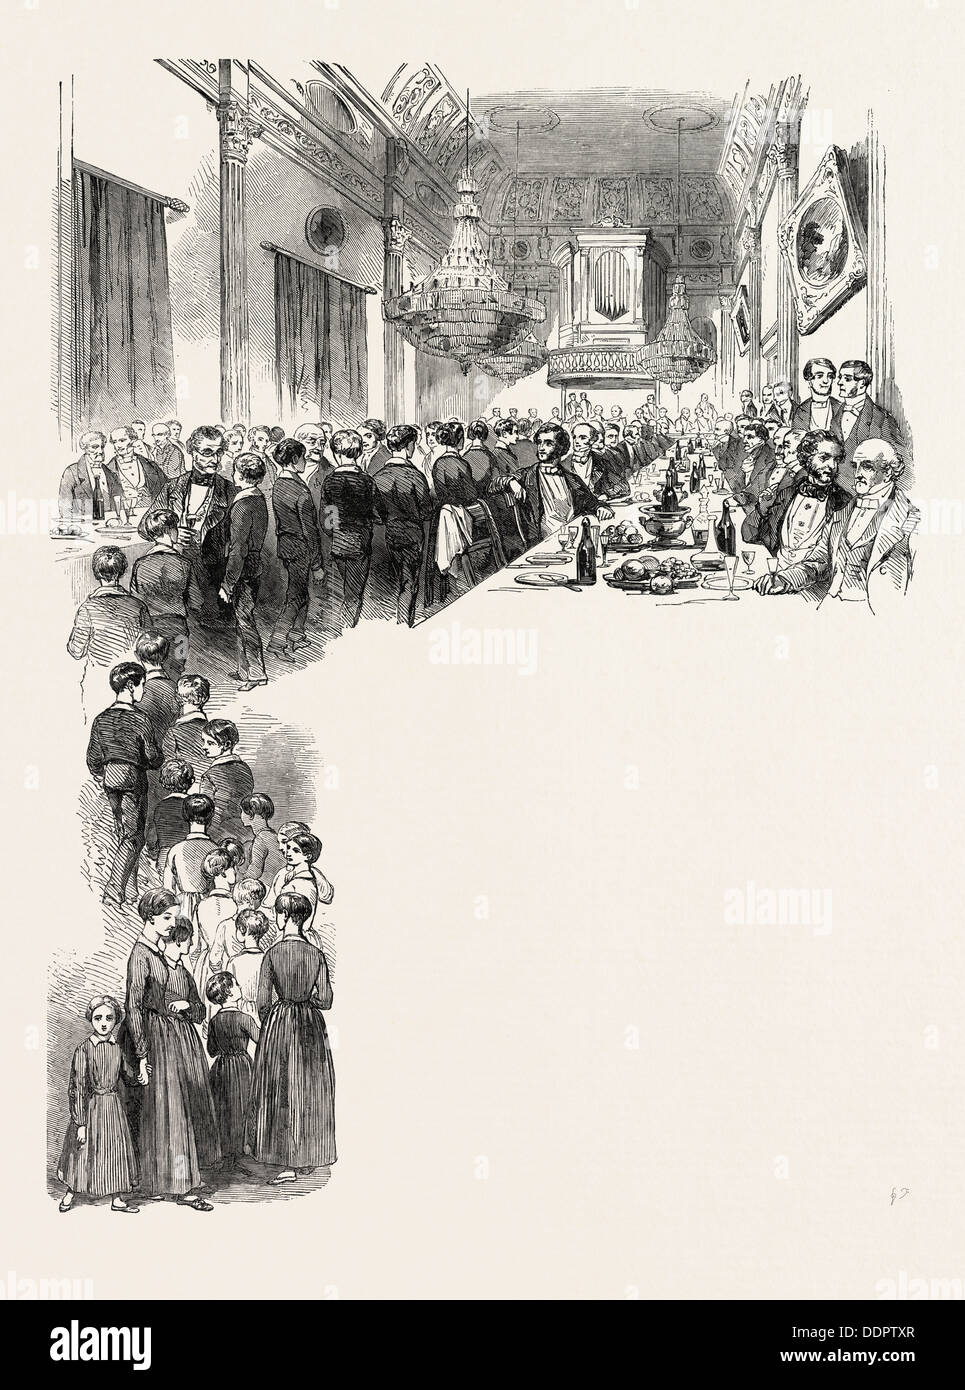 Anniversaire FÊTE DE LA SOCIÉTÉ des voyageurs de commerce, à la taverne de Londres, Royaume-Uni, 1851 Gravure Banque D'Images